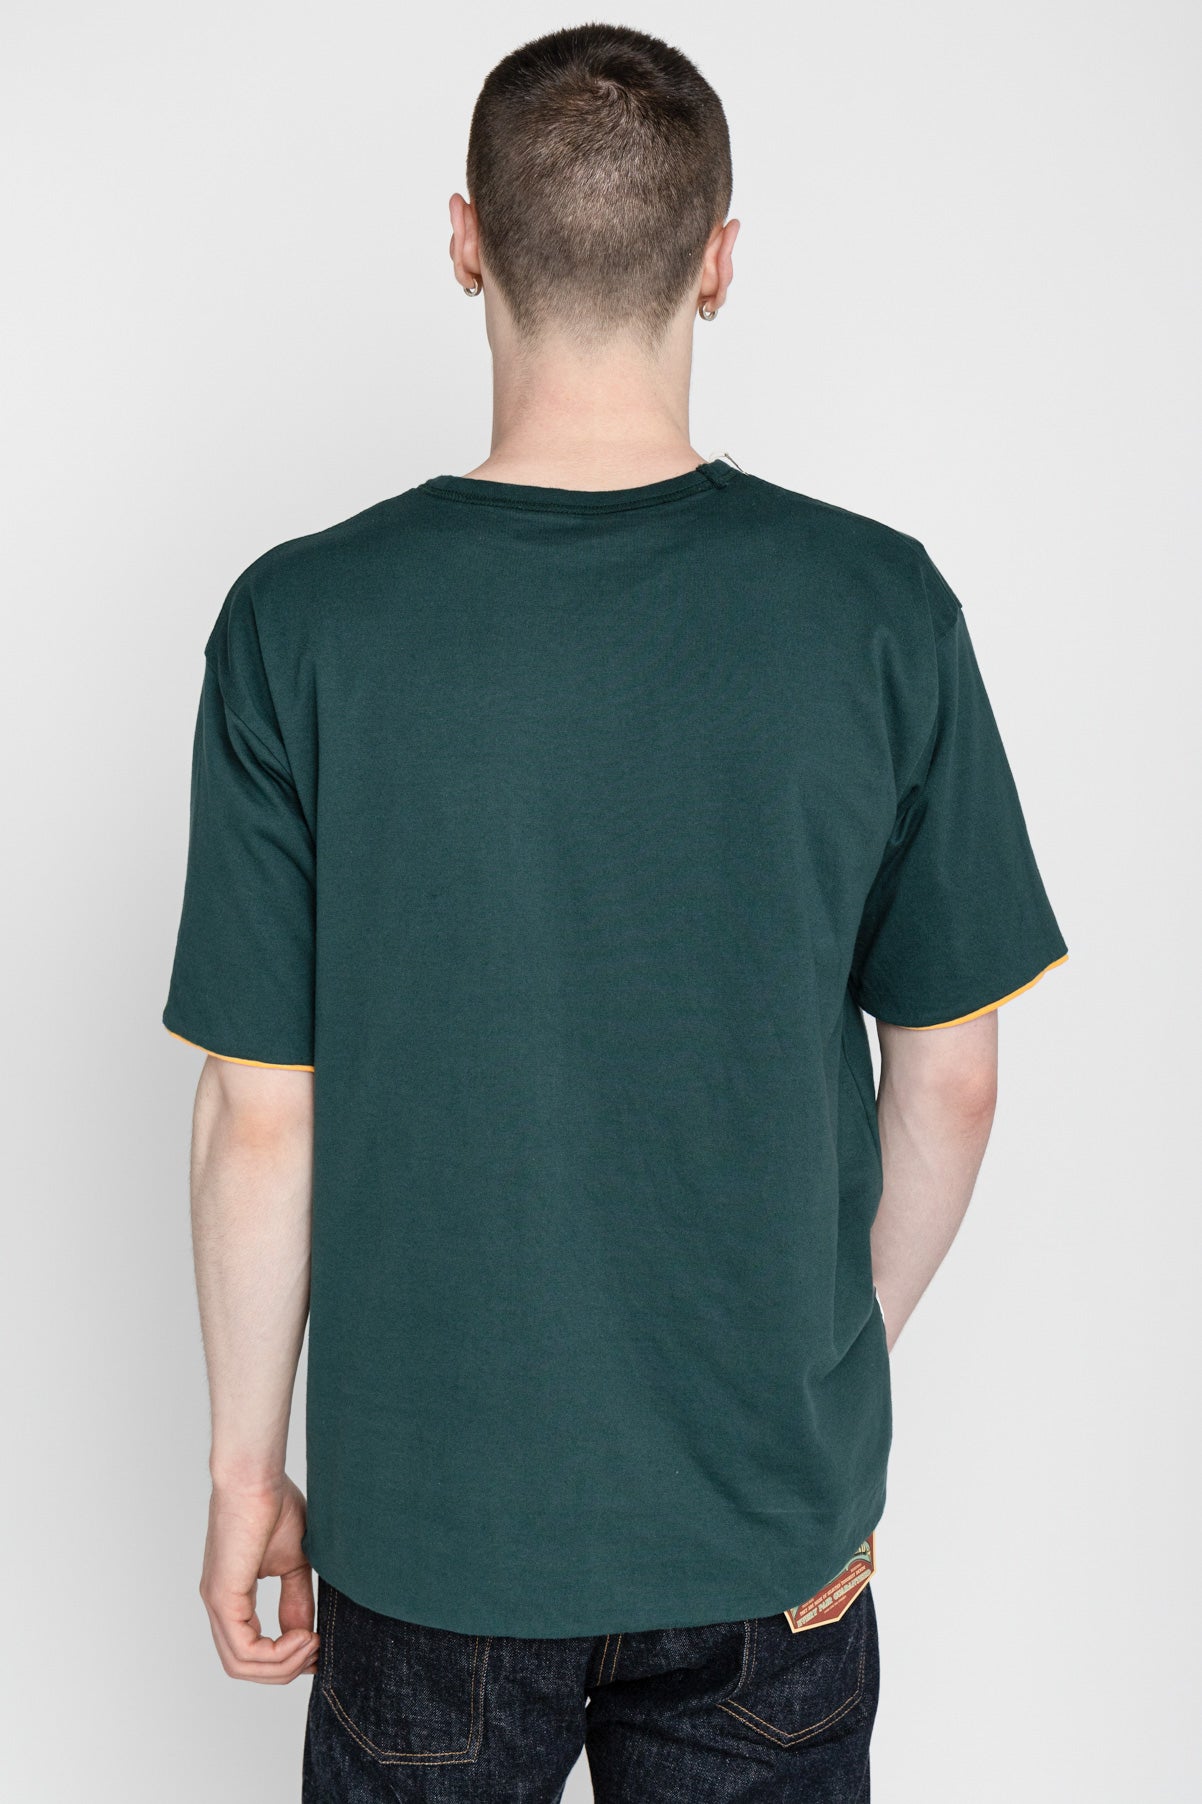 Whitesville 40/2 S/S Reversible Pocket T-Shirt - Gold x Green